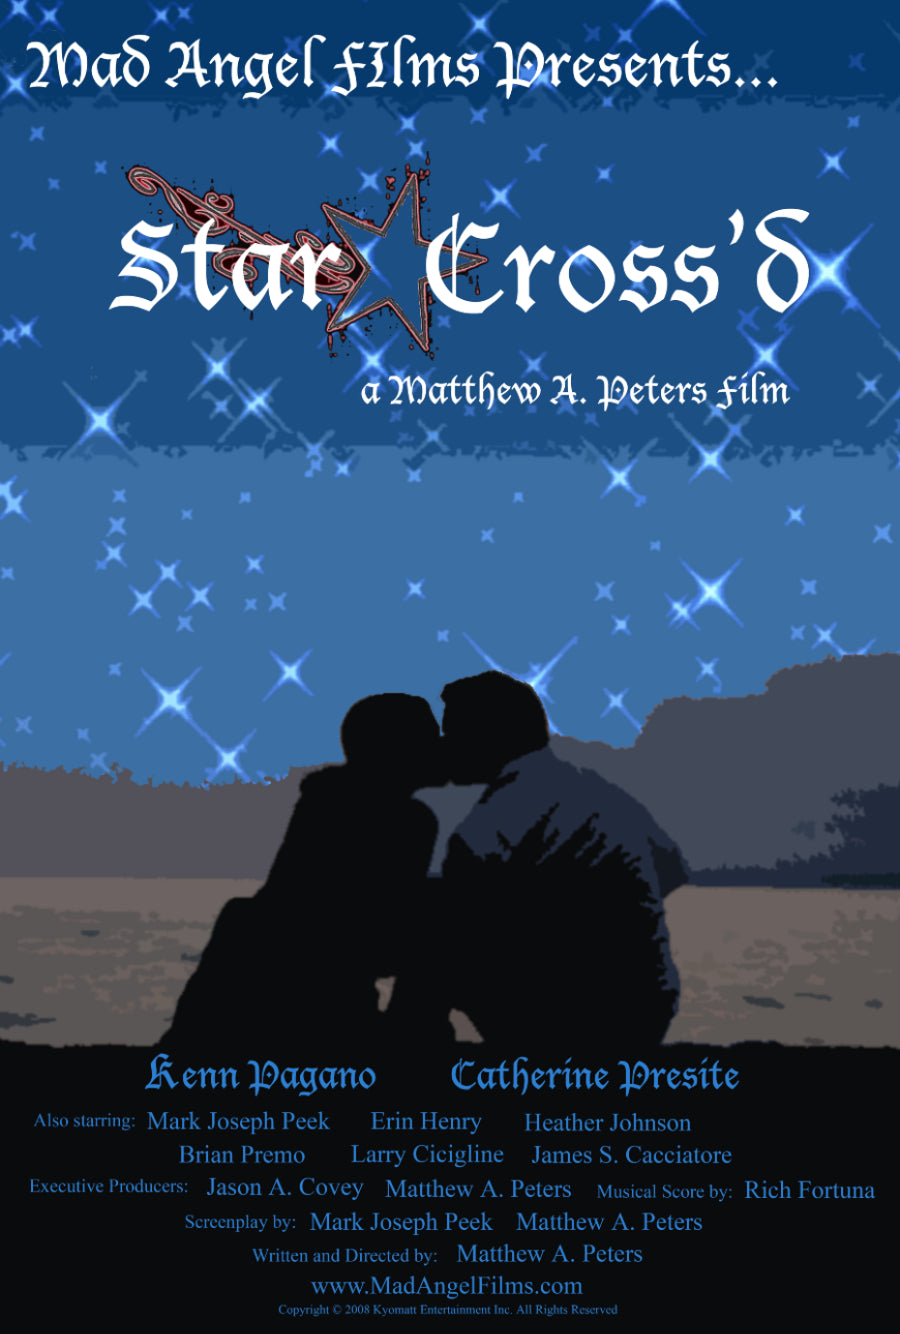 Star-Cross'd